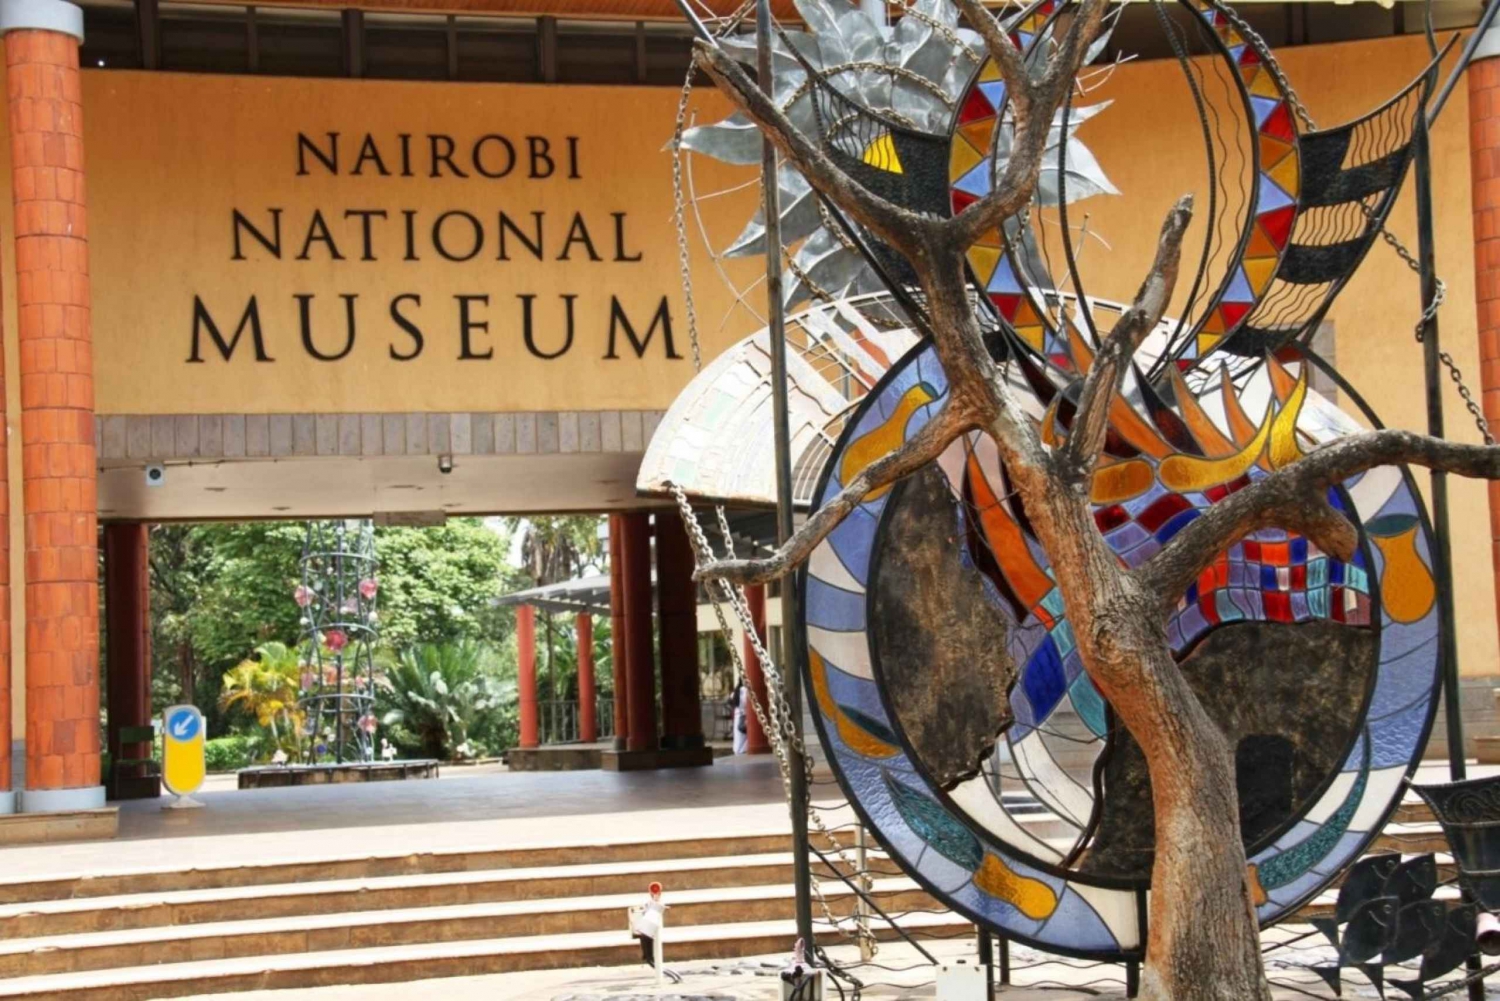 Escale à l'aéroport de Nairobi : Visite du musée national de Nairobi